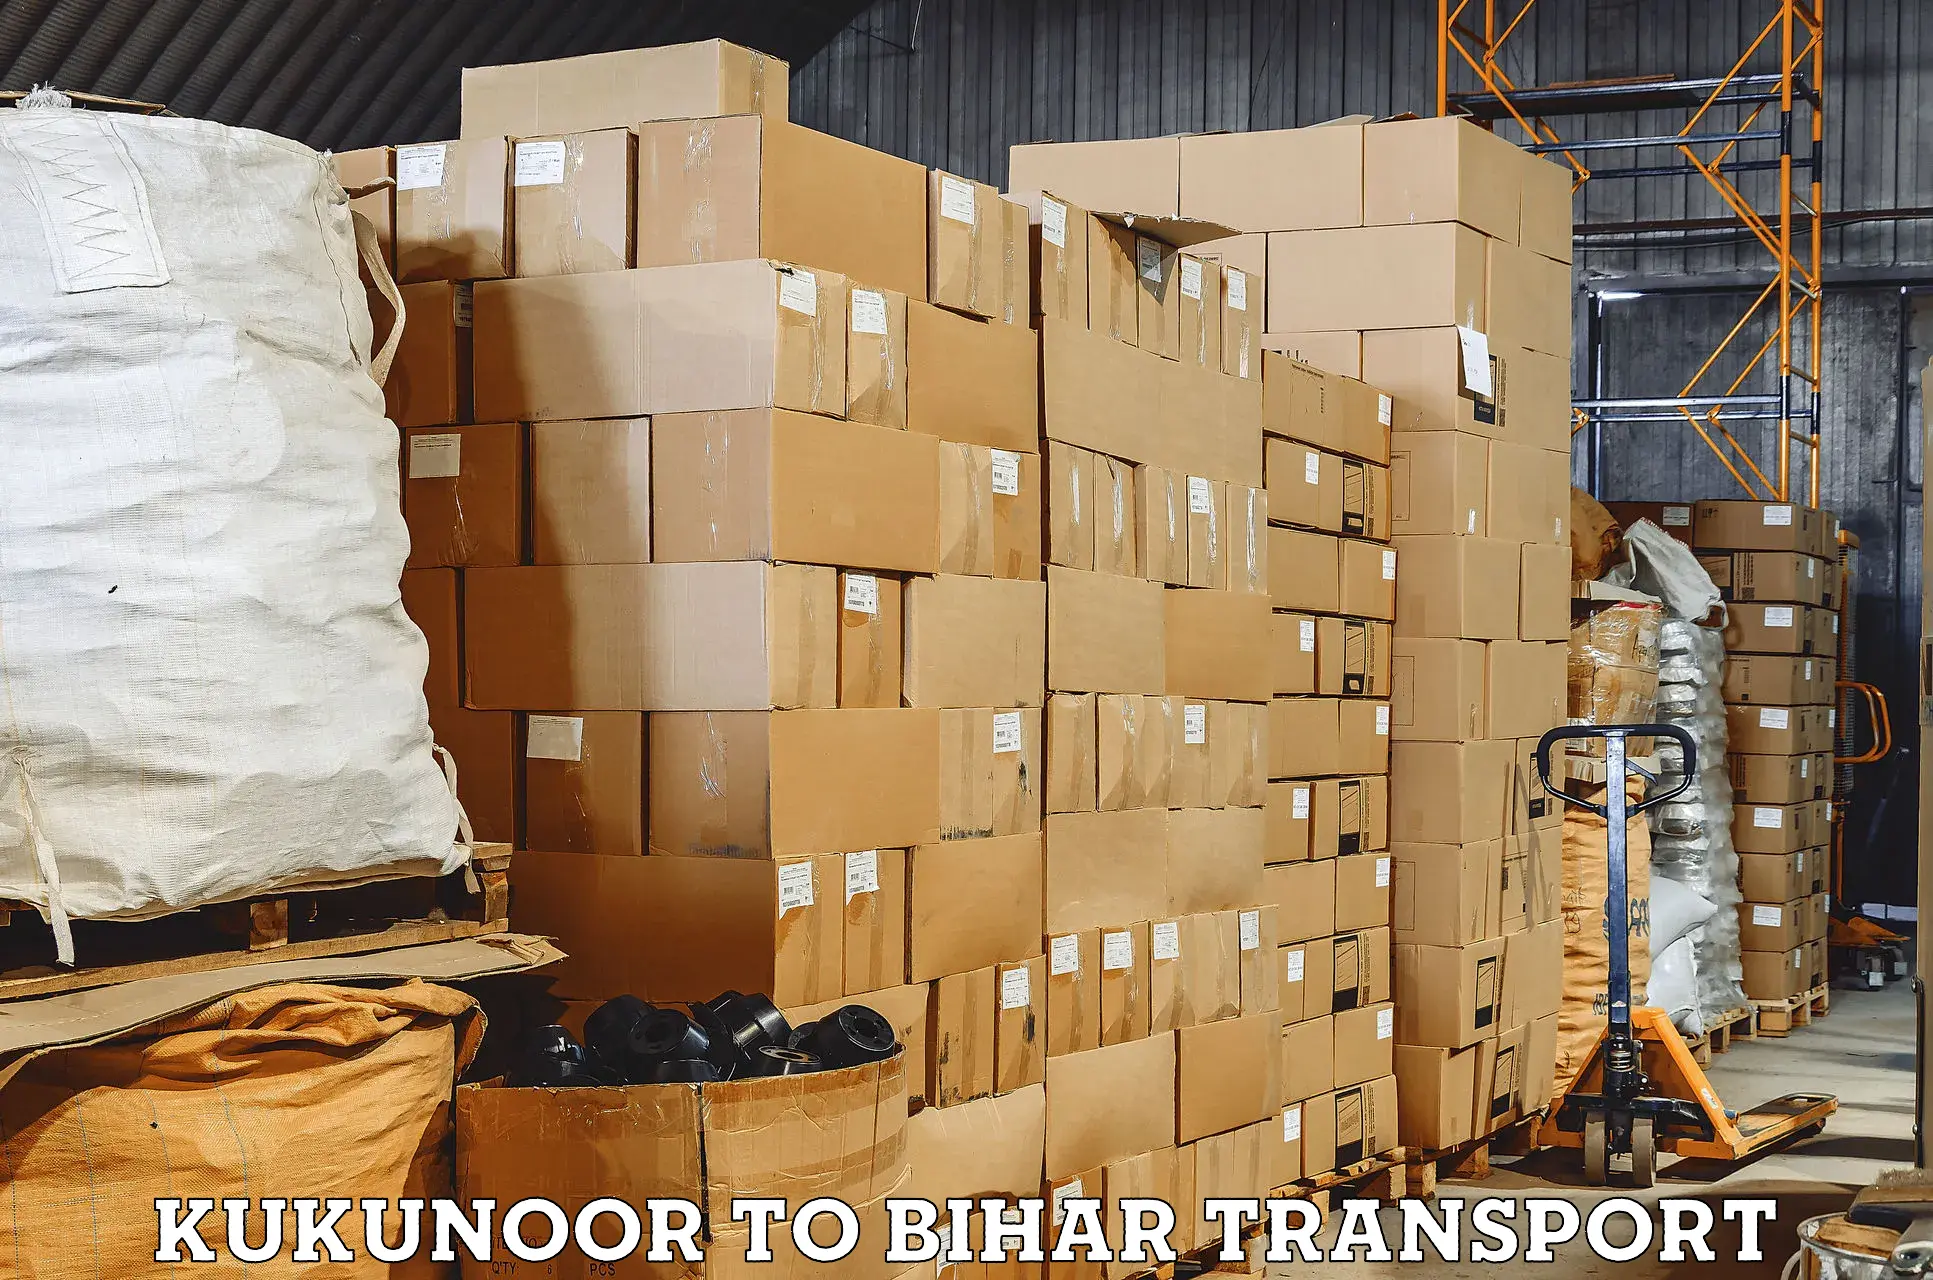 Daily parcel service transport Kukunoor to Aurangabad Bihar